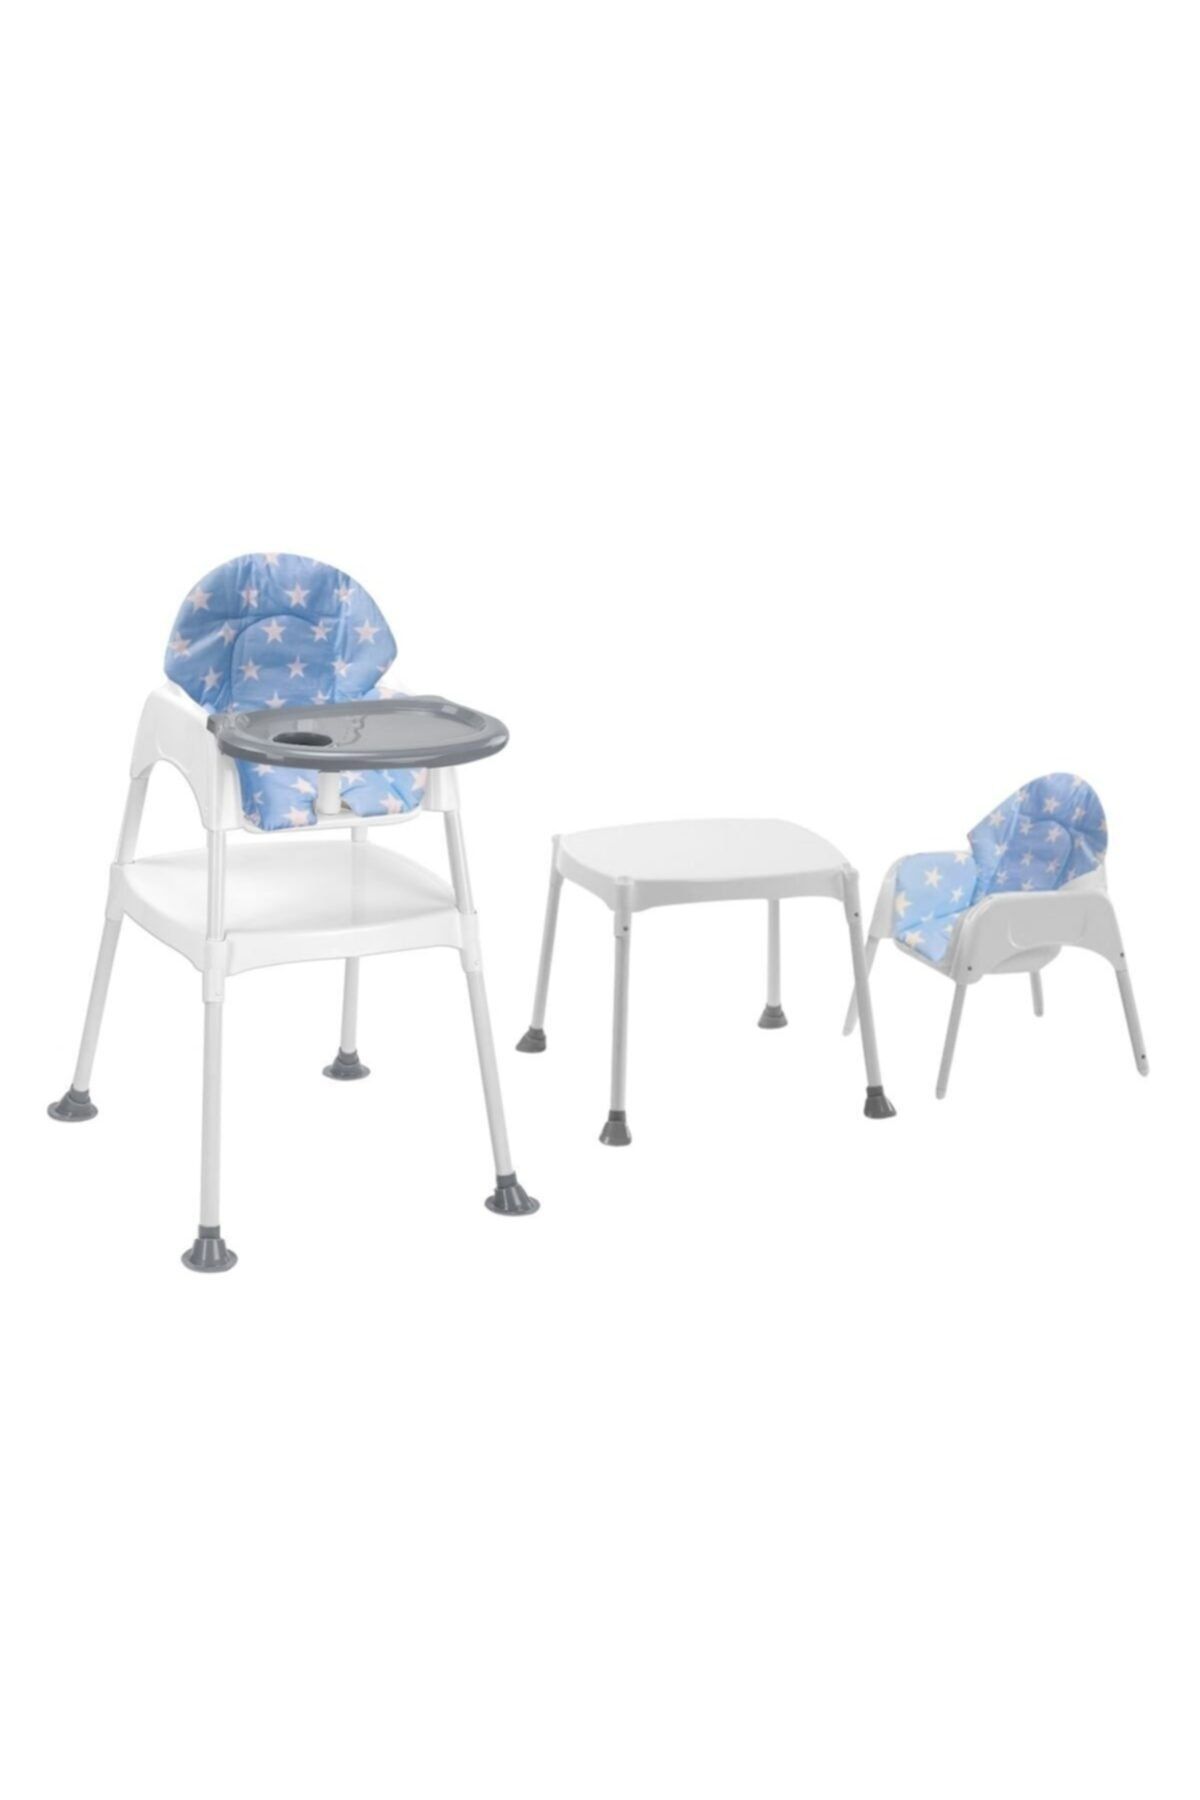 Moje Boom Çalışma Masalı Portatif Mama Sandalyesi - Mavi Yıldız